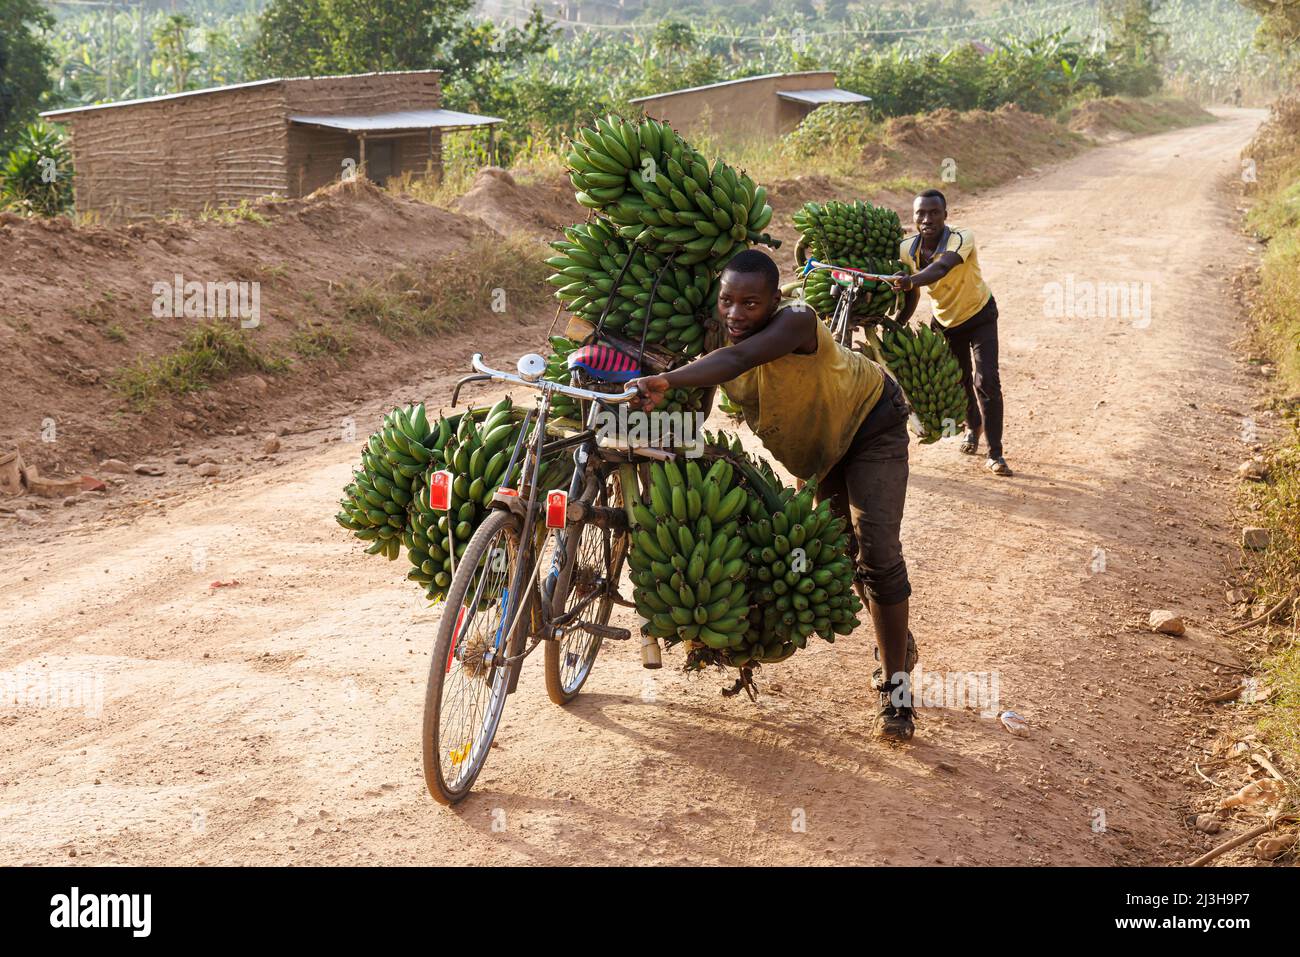 Uganda, distrito de Mbarara, Mburo, dos hombres que llevaban sus bicicletas matooke (plátano) Foto de stock